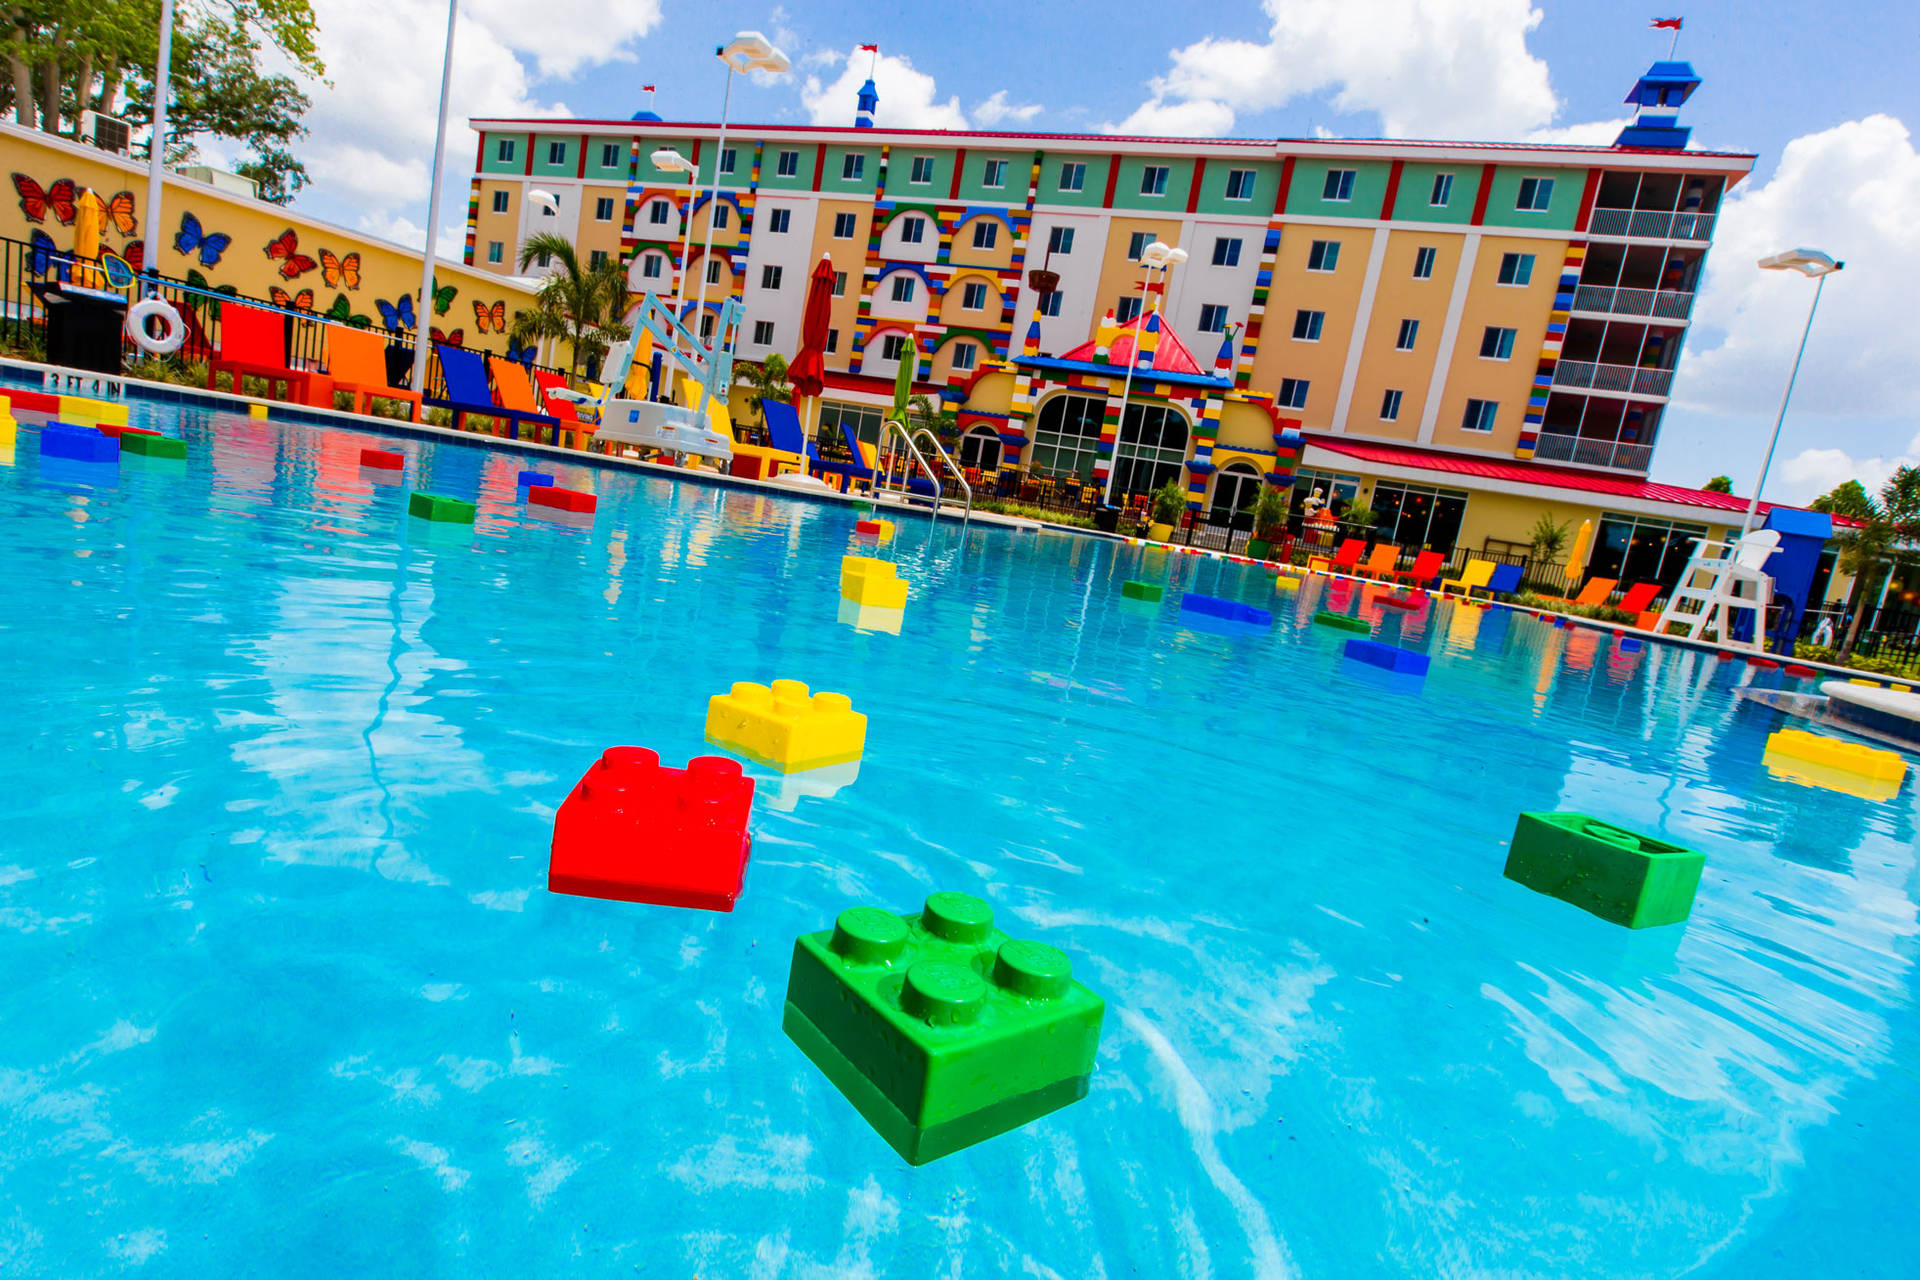 Lego Inflatable Blocks At Legoland Resort Wallpaper